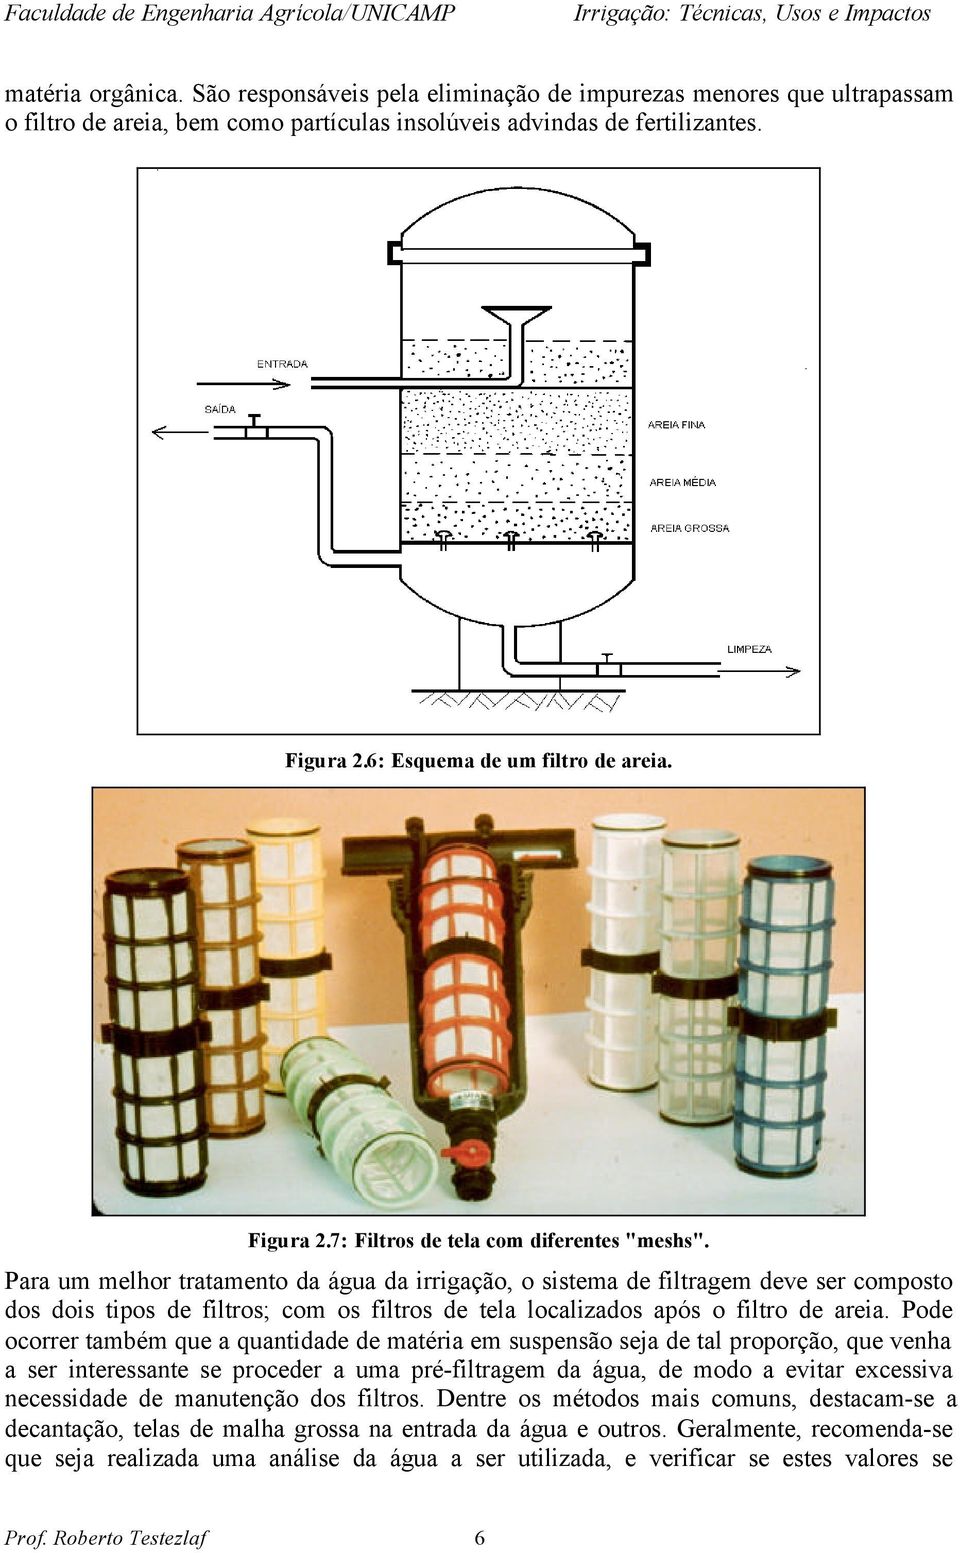 Para um melhor tratamento da água da irrigação, o sistema de filtragem deve ser composto dos dois tipos de filtros; com os filtros de tela localizados após o filtro de areia.